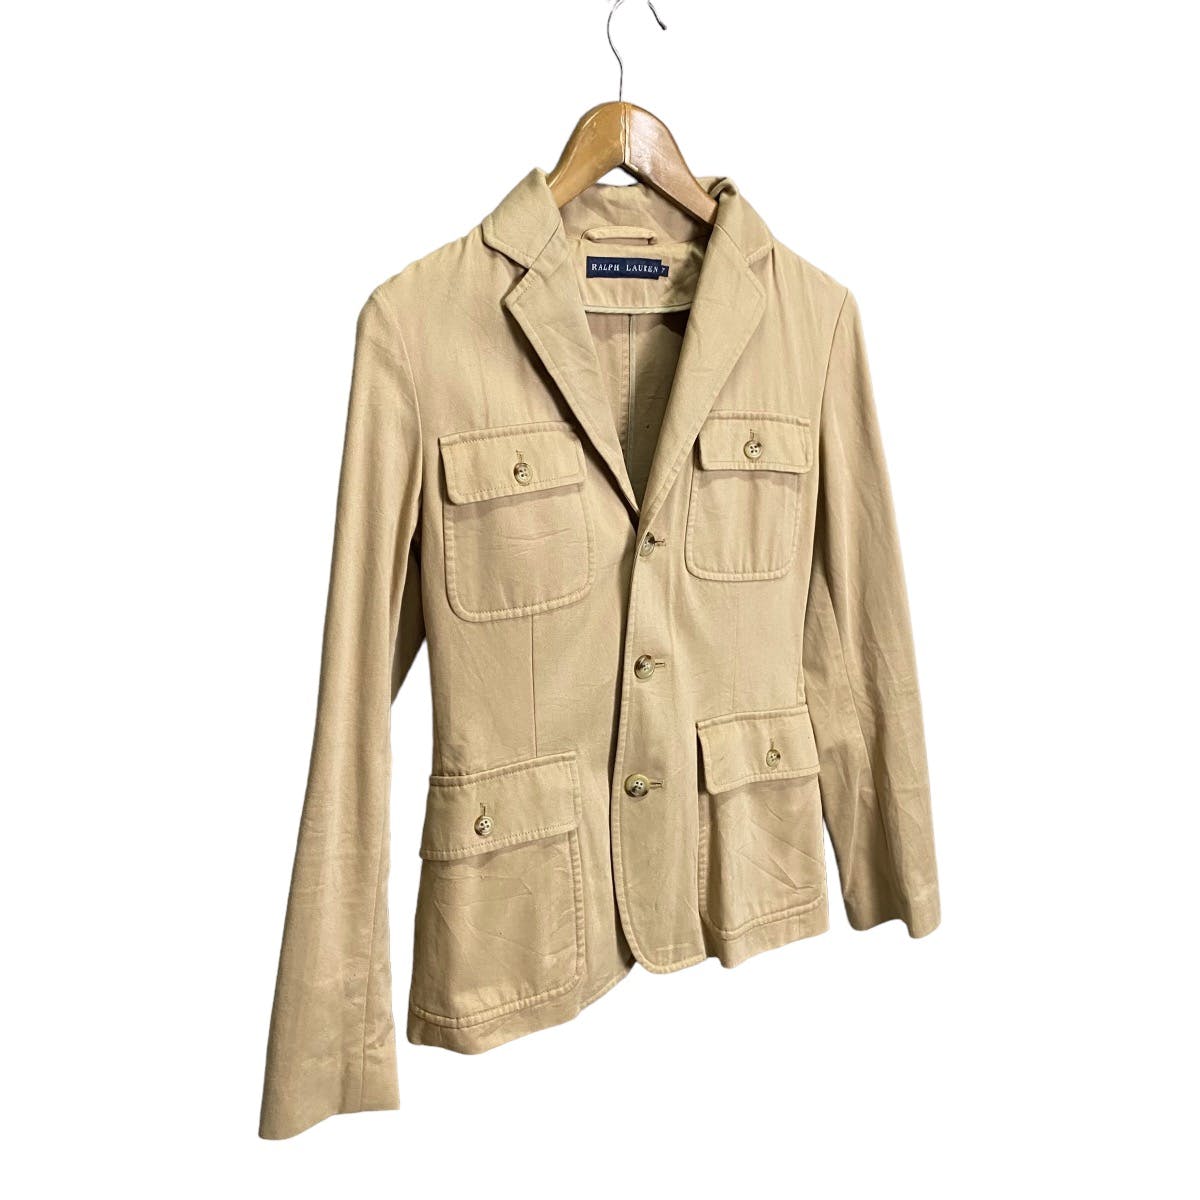 Ralph Lauren 4 pocket jacket - 2